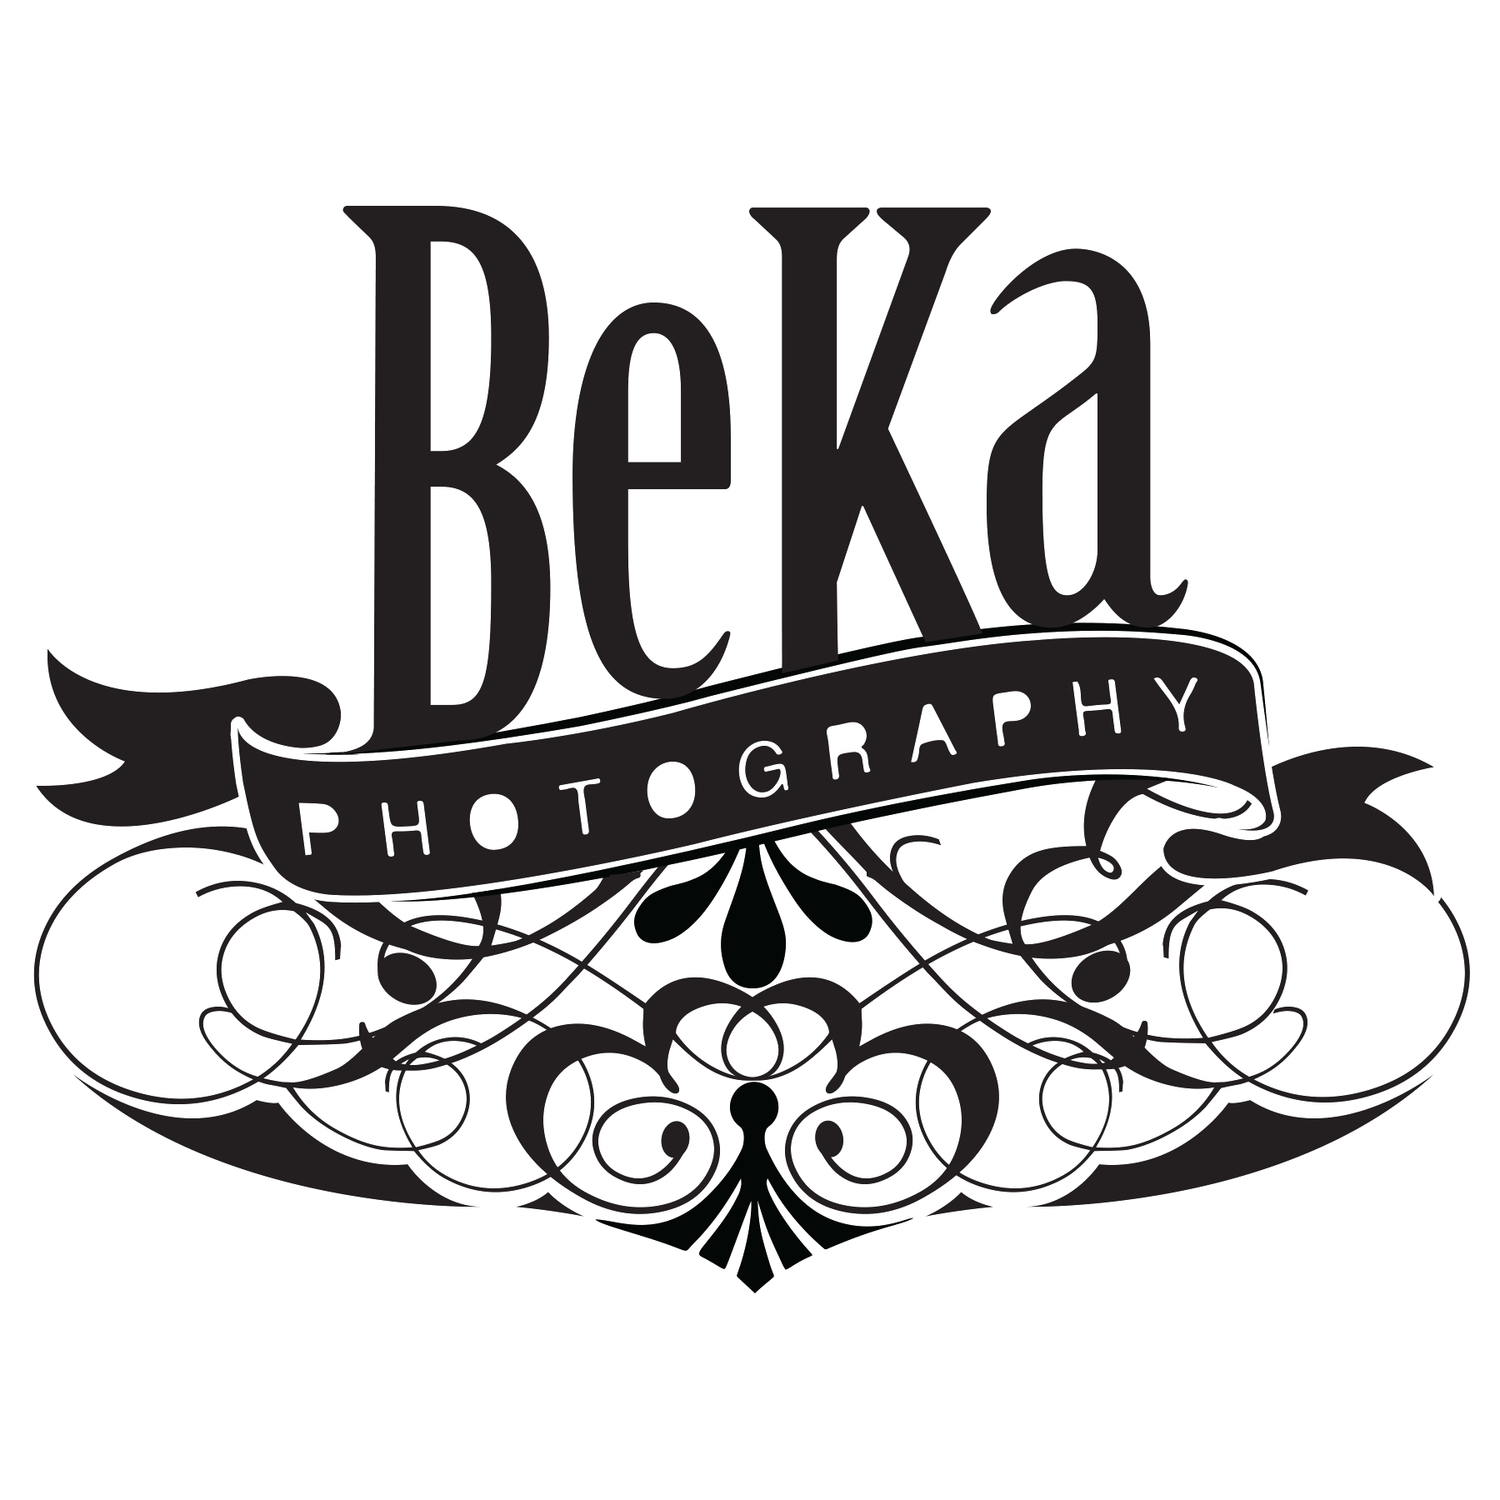 BeKa Photography